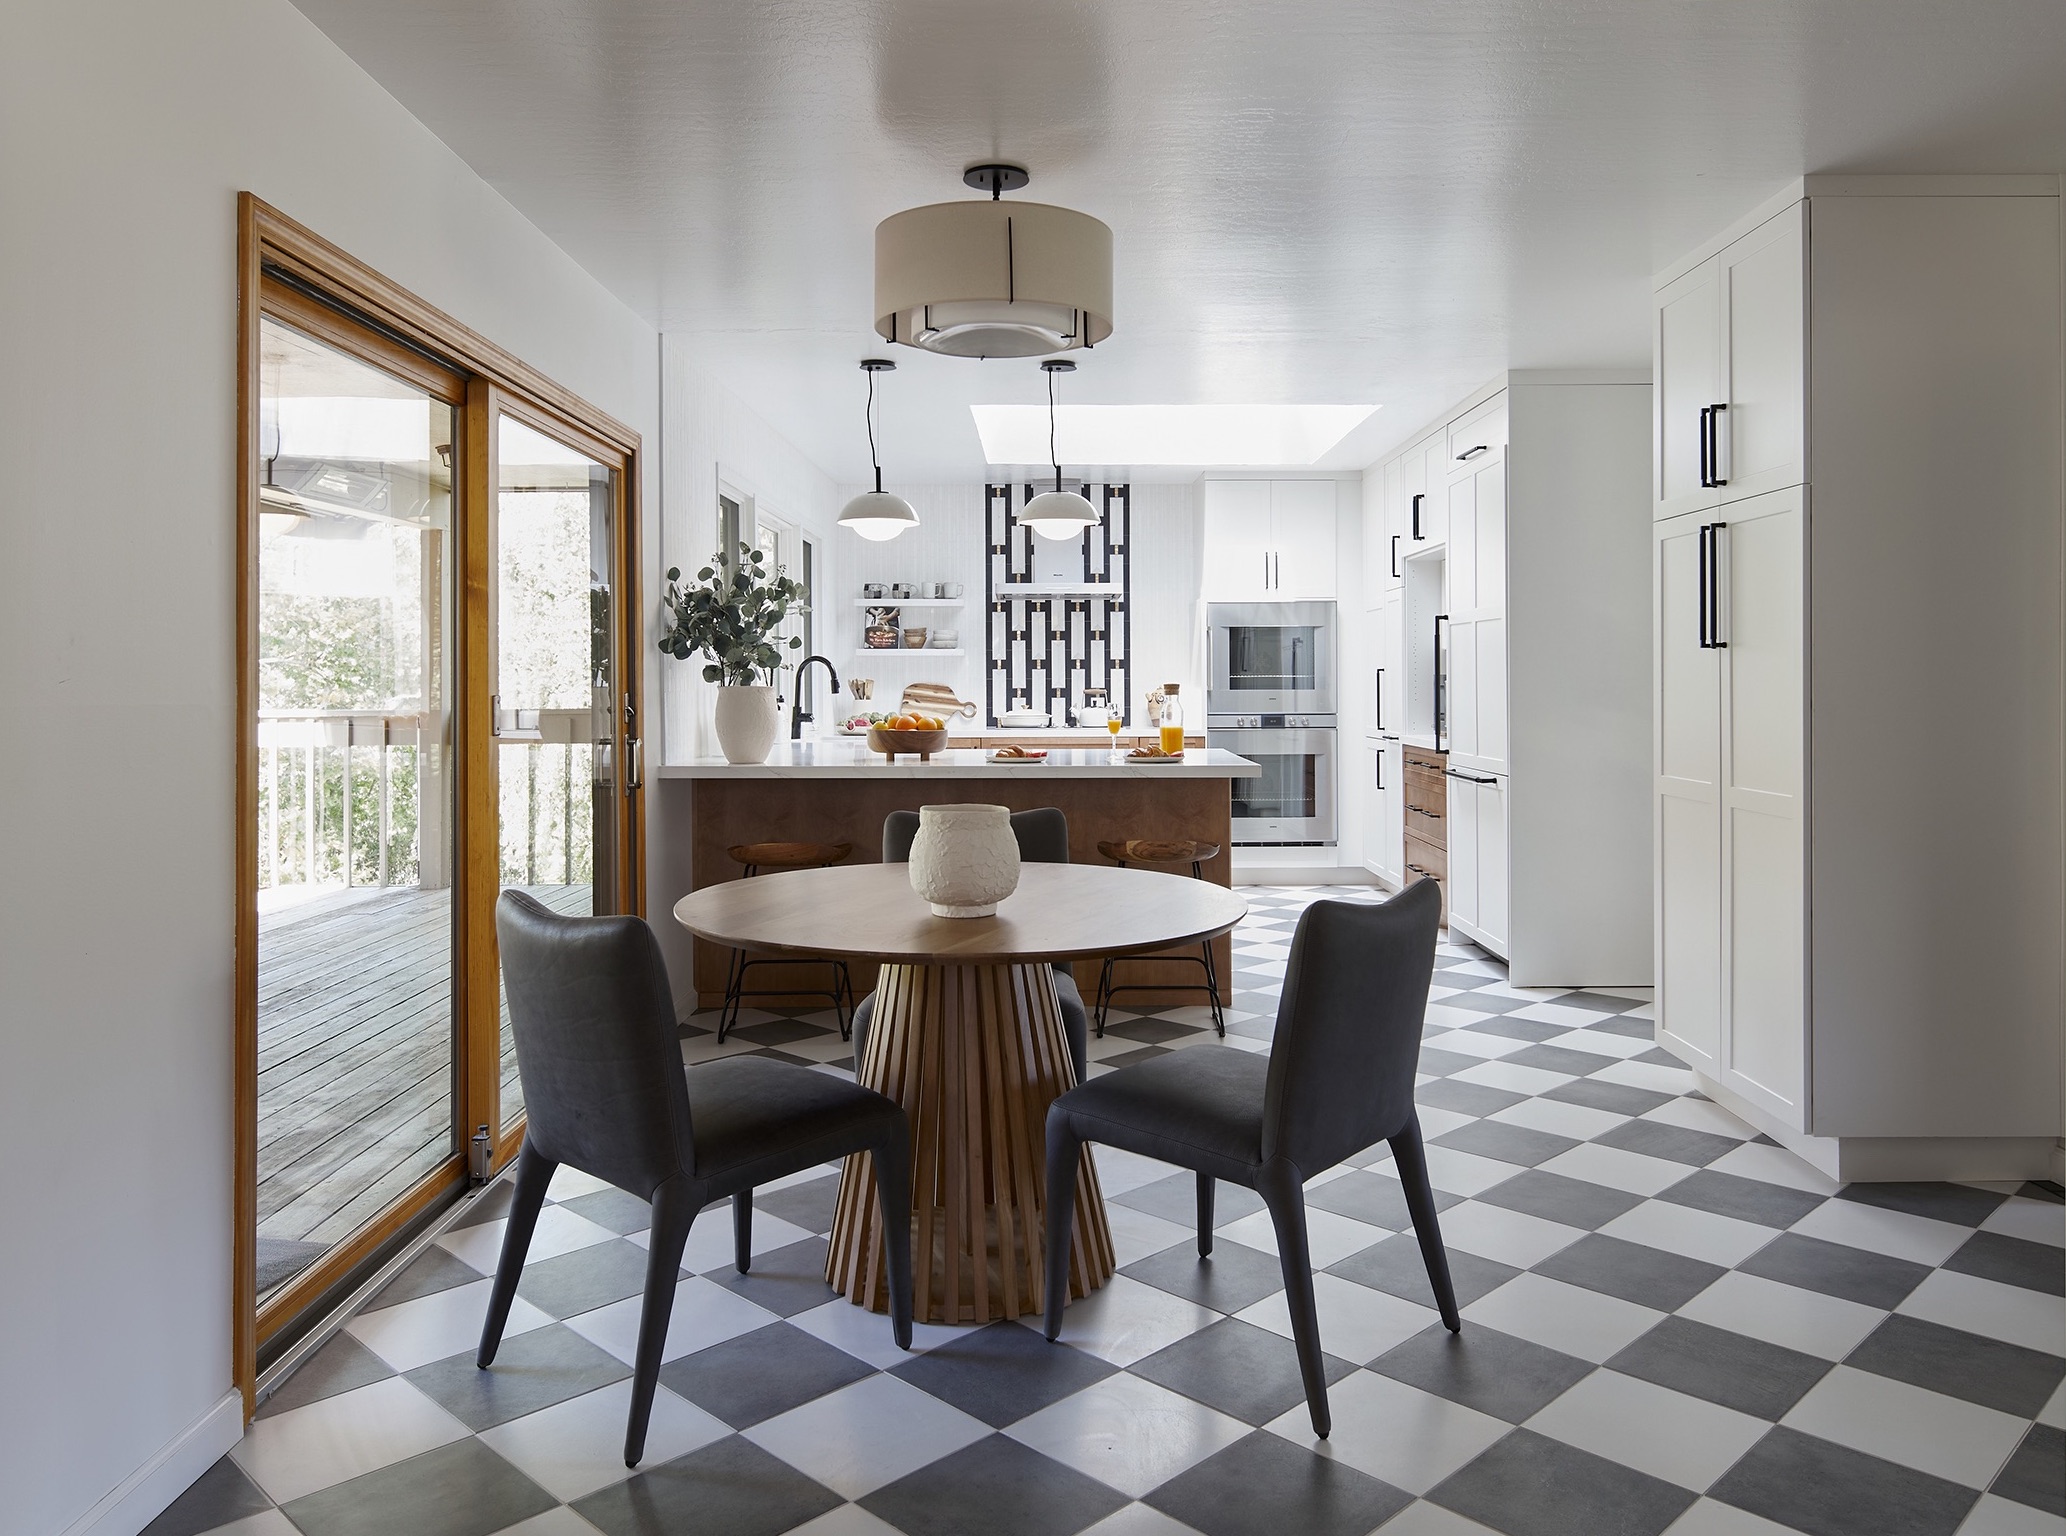 Home renovation in Los Altos Hills by Bay Area interior designer, Kanika Design - 05